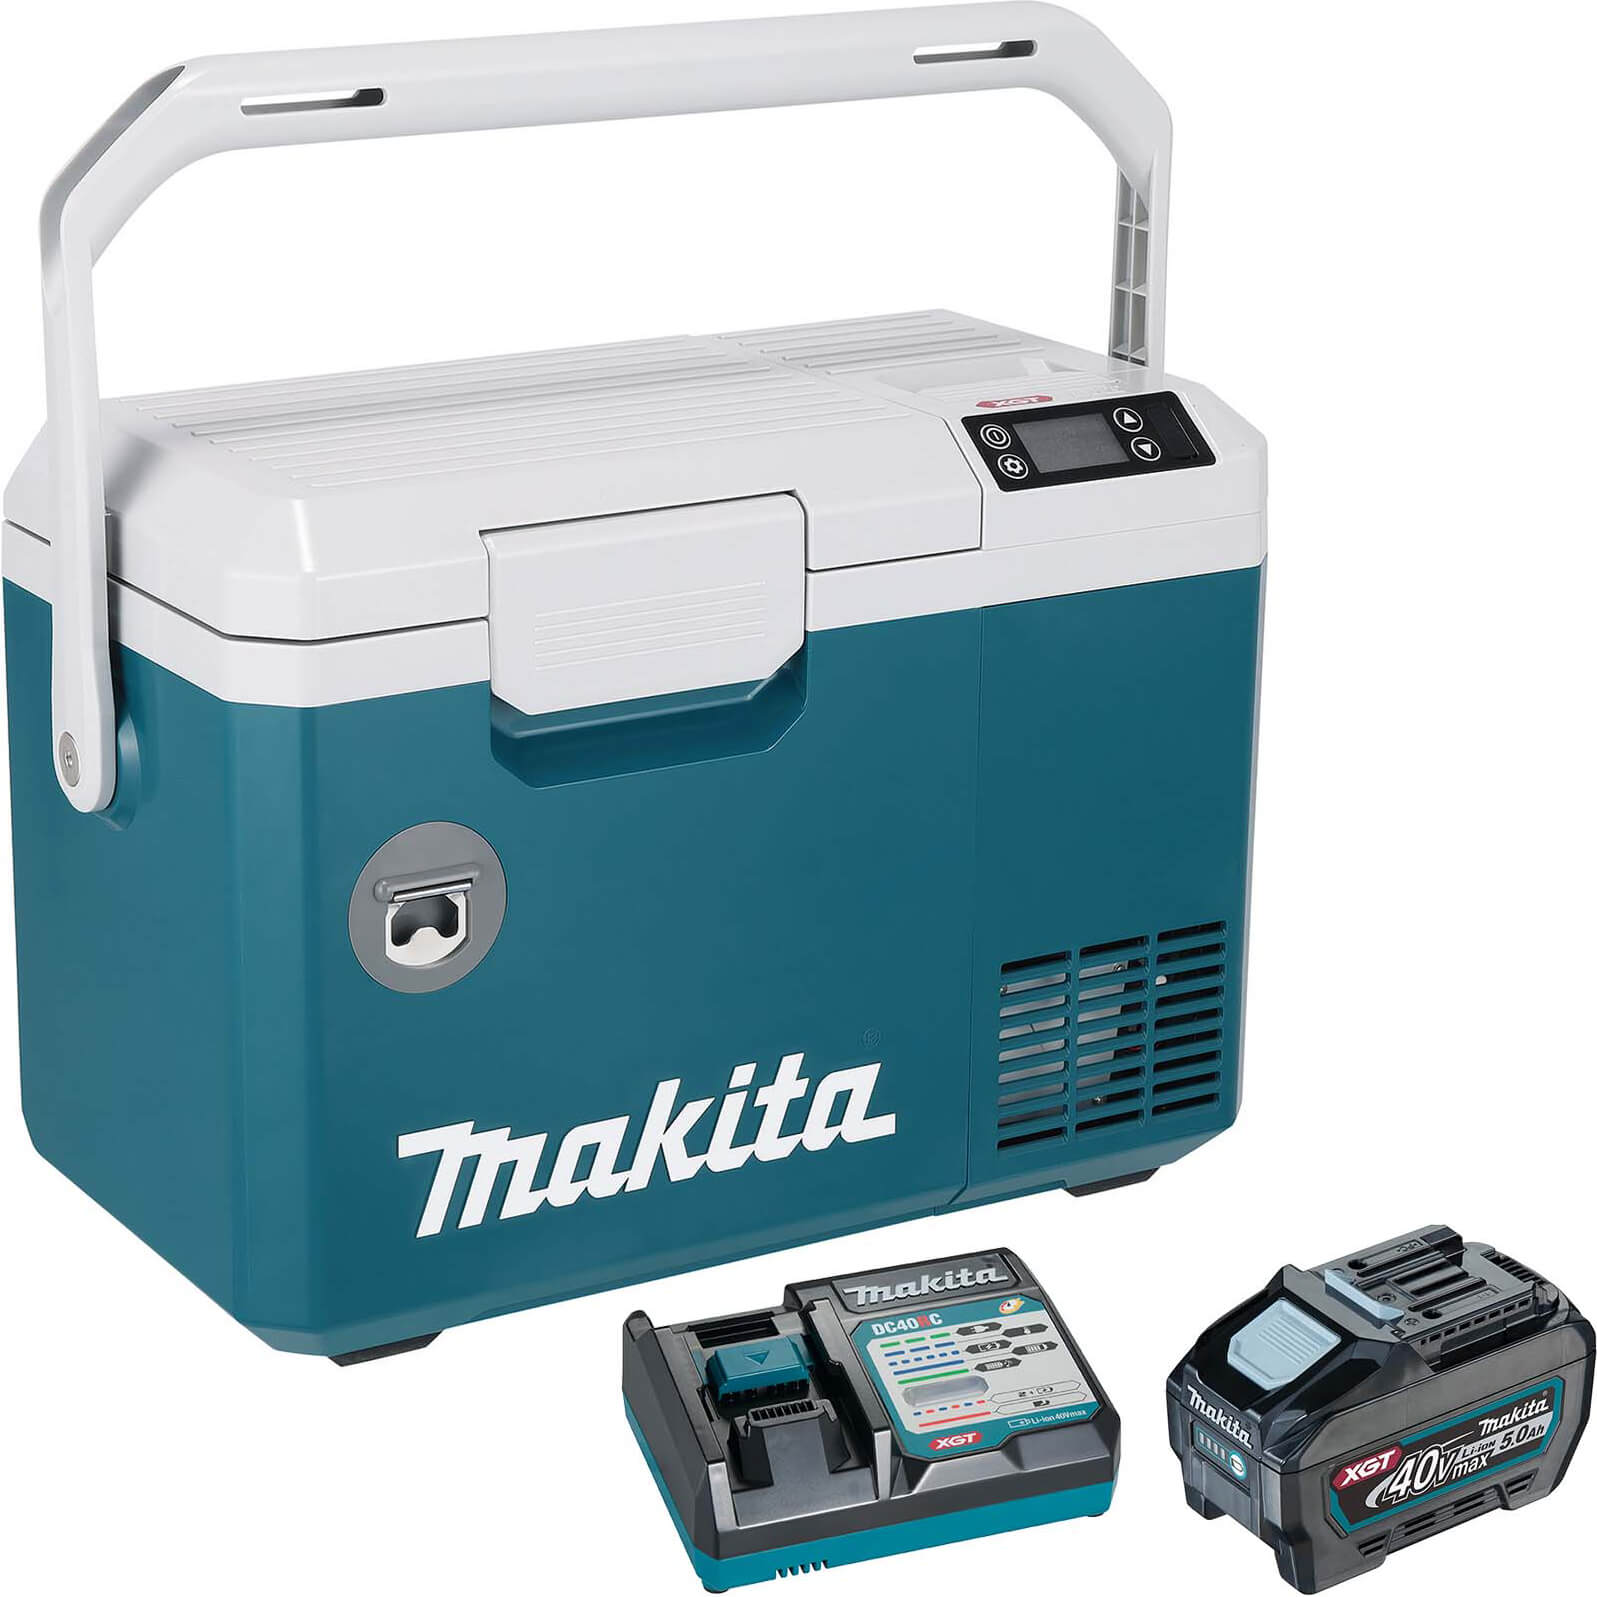 Makita CW003G 40v Max XGT Cordless Drinks Cooler and Warmer Box 1 x 5ah Li-ion Charger